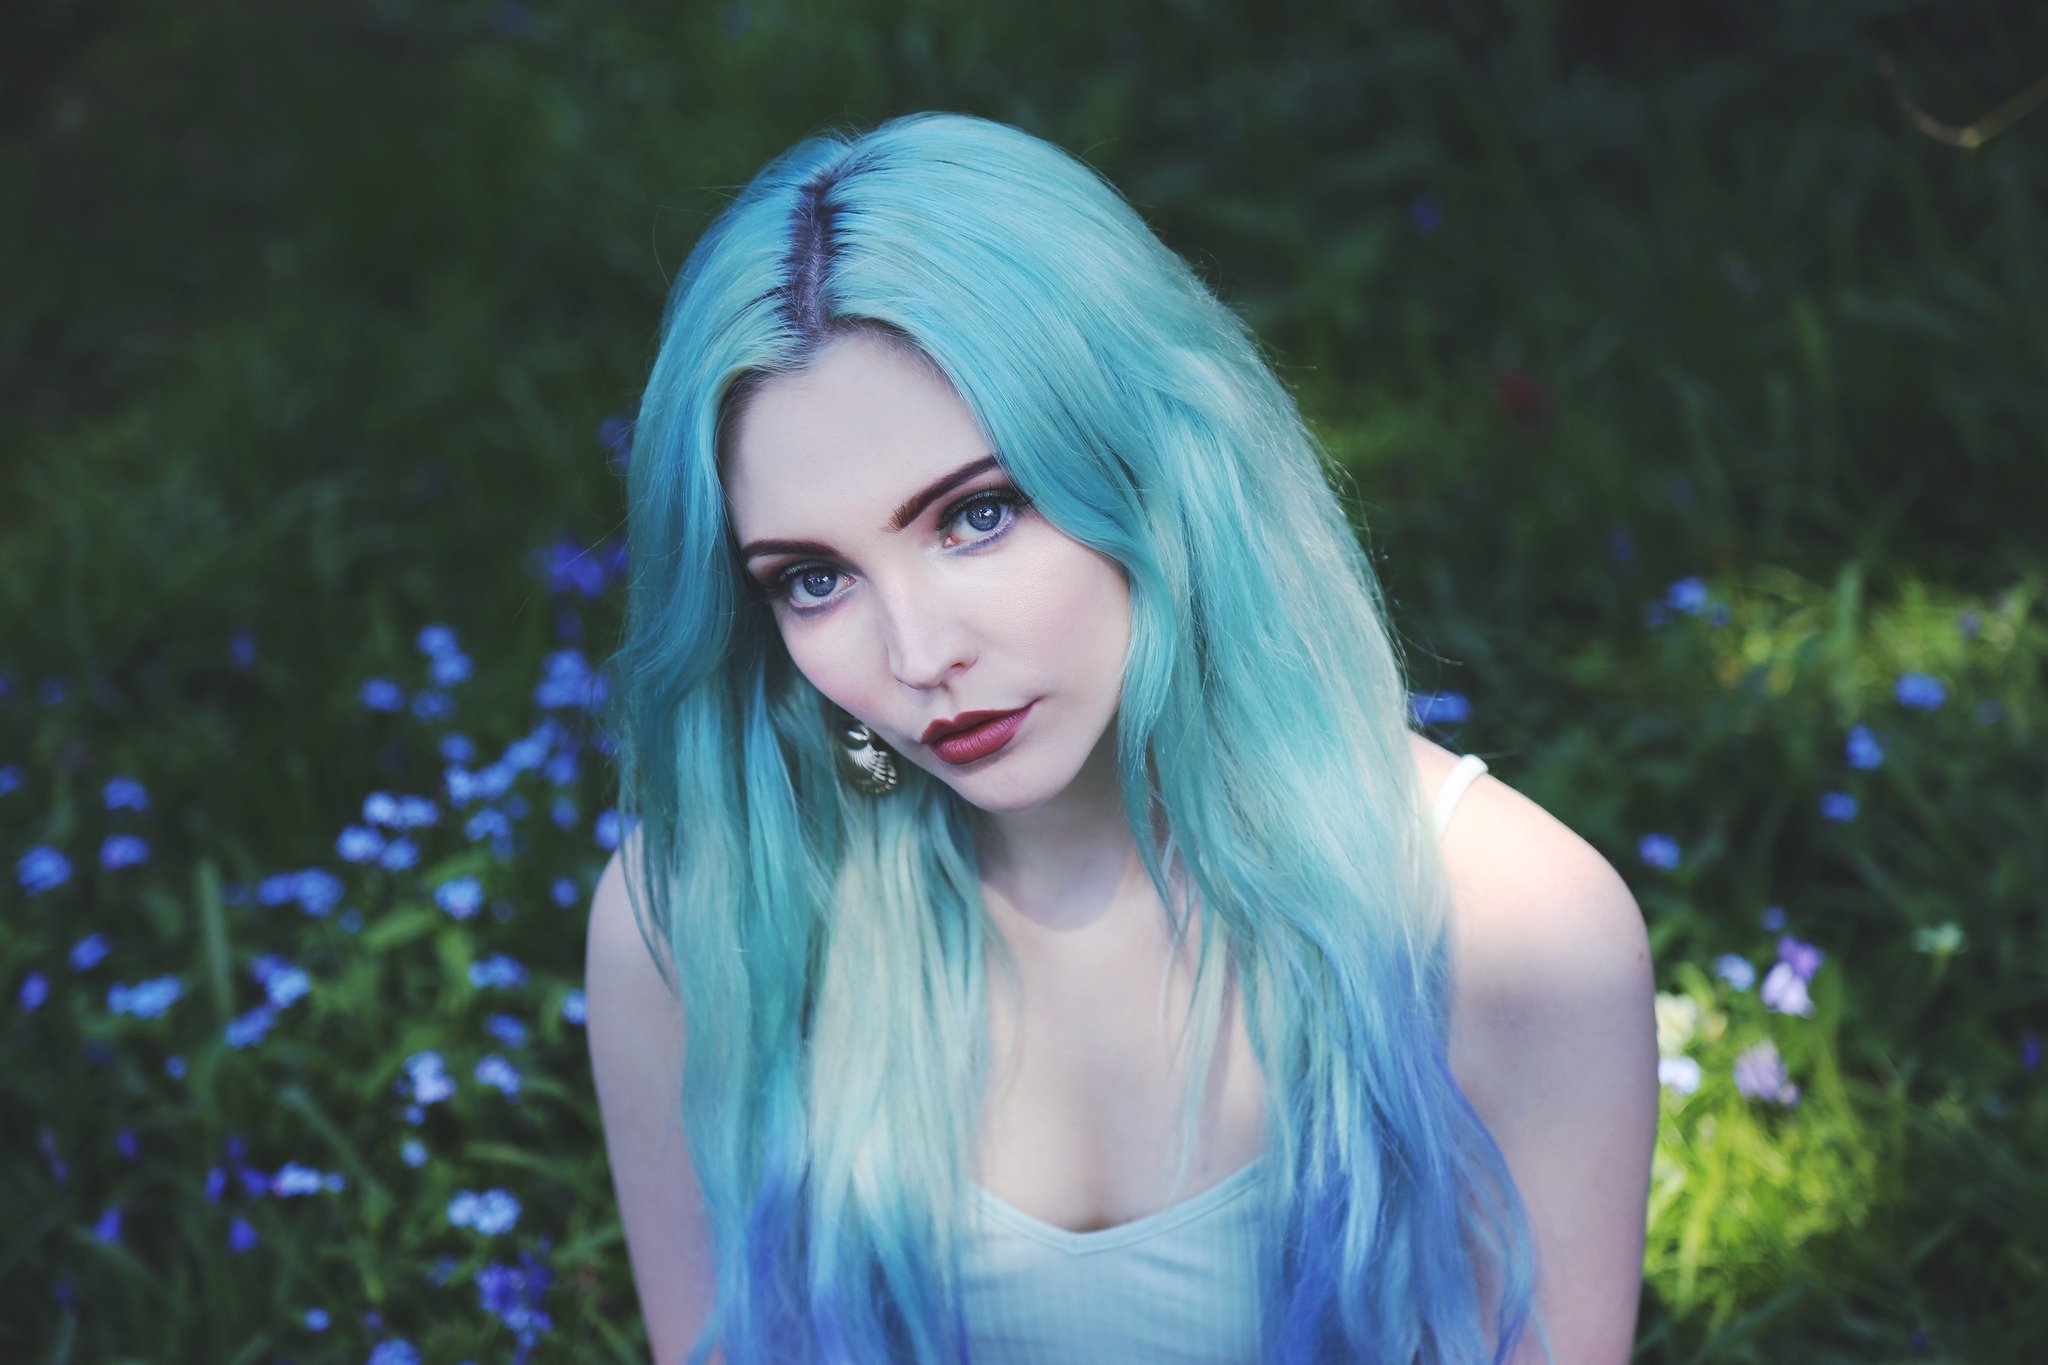 Голая девушка с разноцветными волосами фото